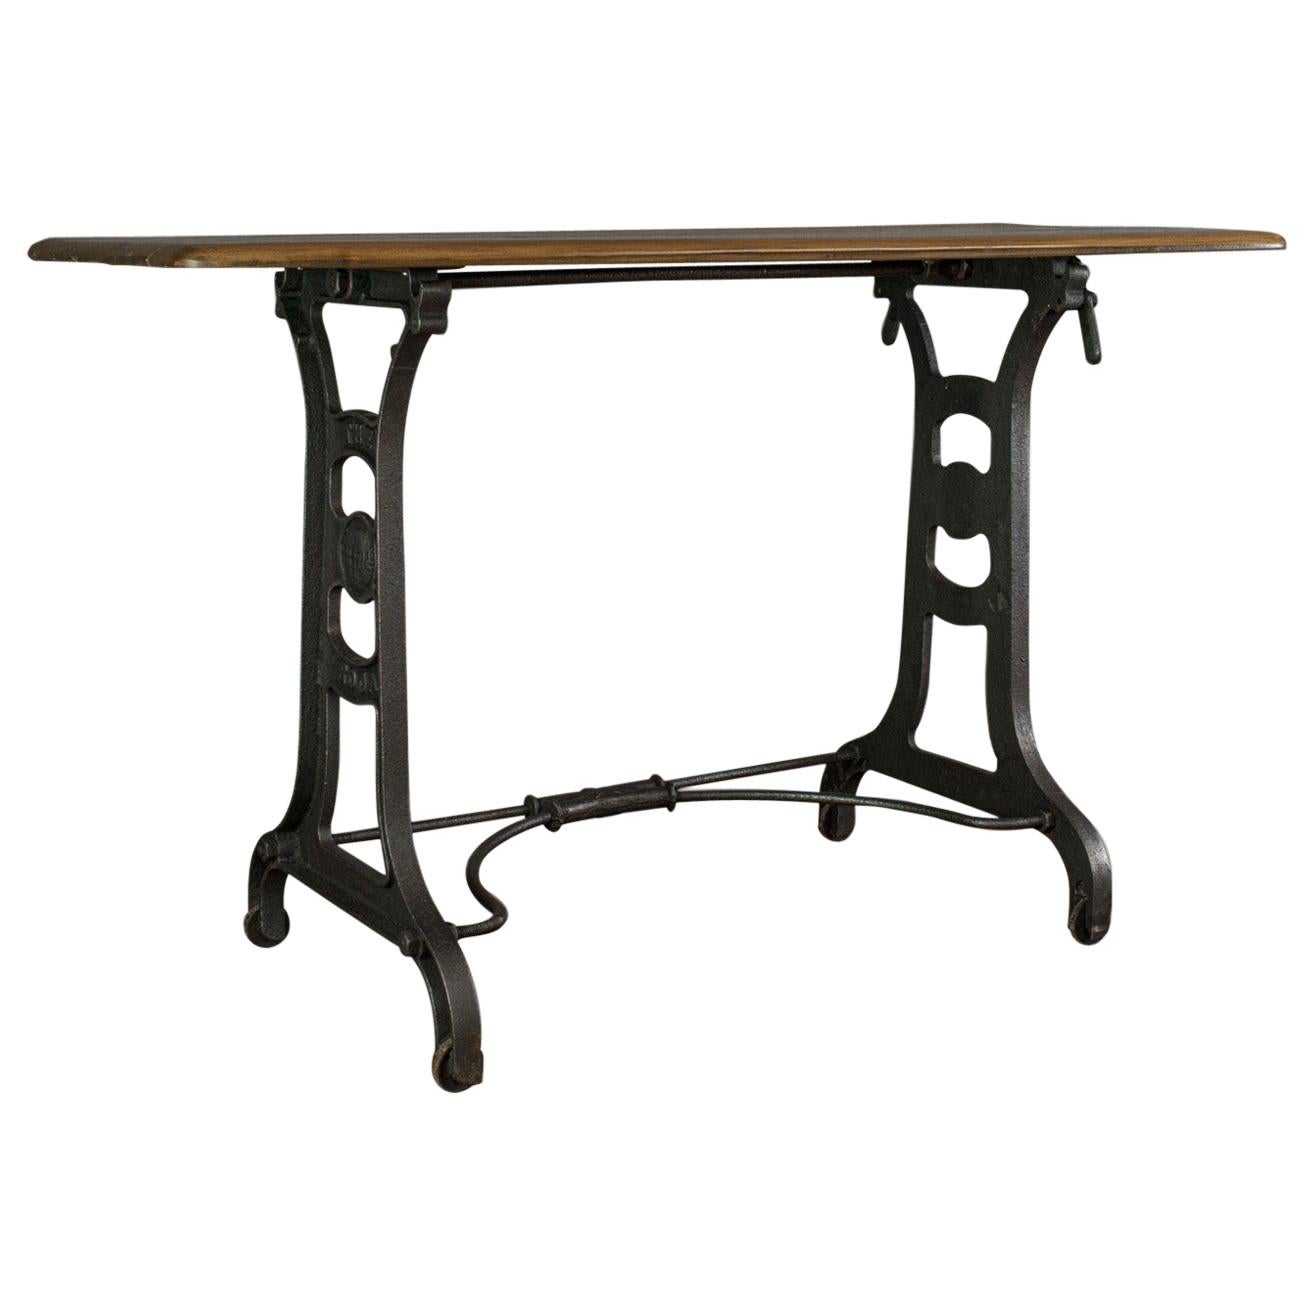 Table d'orangerie, anglaise, industrielle, machiniste, victorienne, latérale, vers 1900